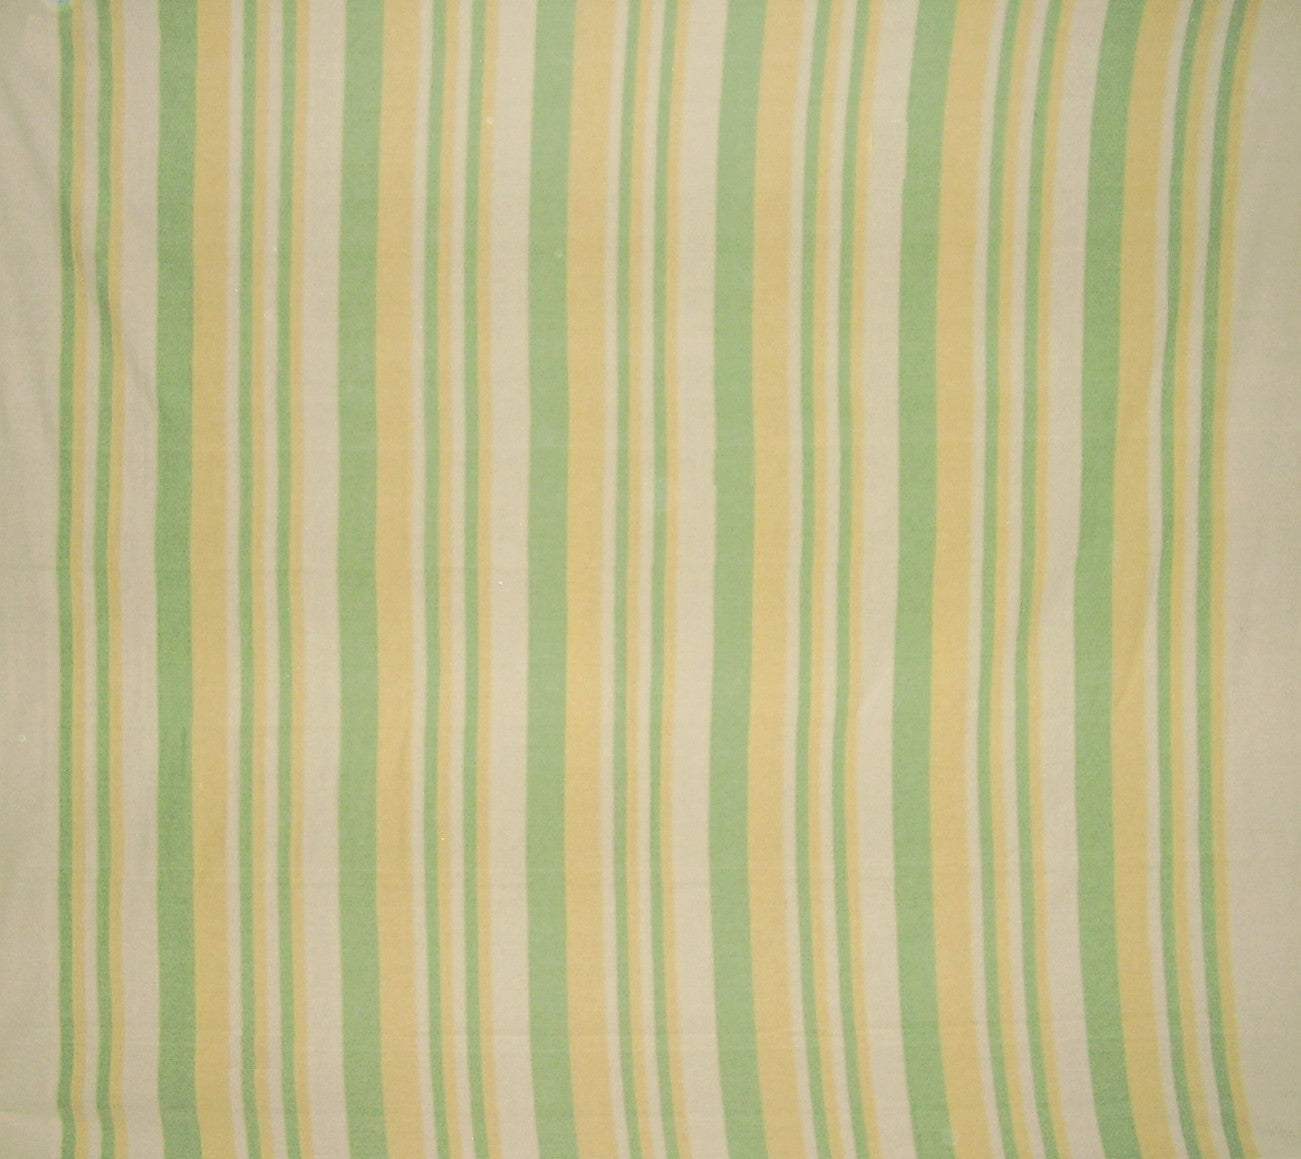 Colcha canelada de algodão pesado 98" x 88" totalmente verde e amarelo em bege